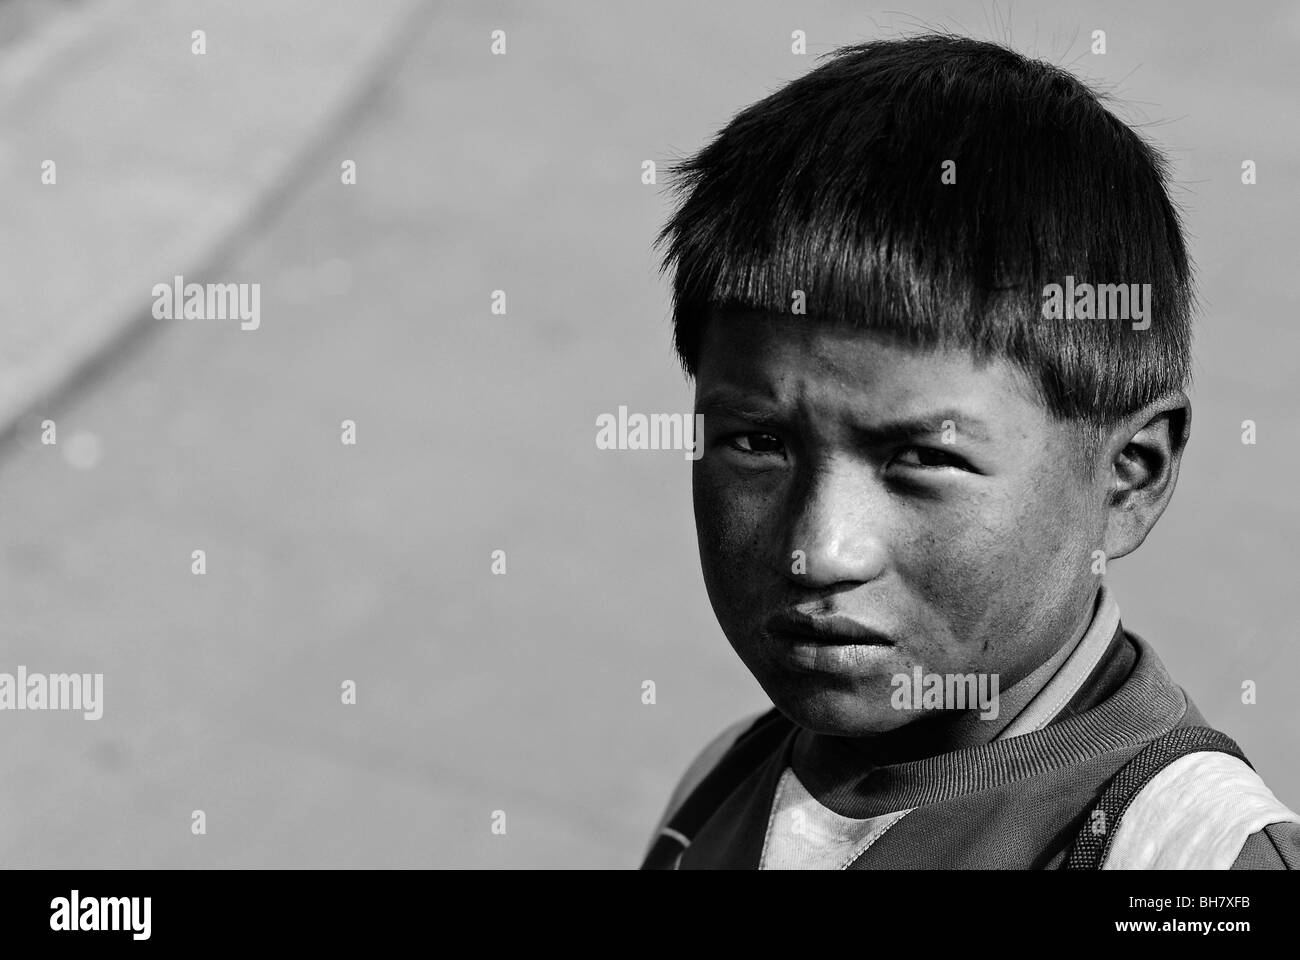 Ecuador, Quito, portrait of unhappy boy with a messy face Stock Photo